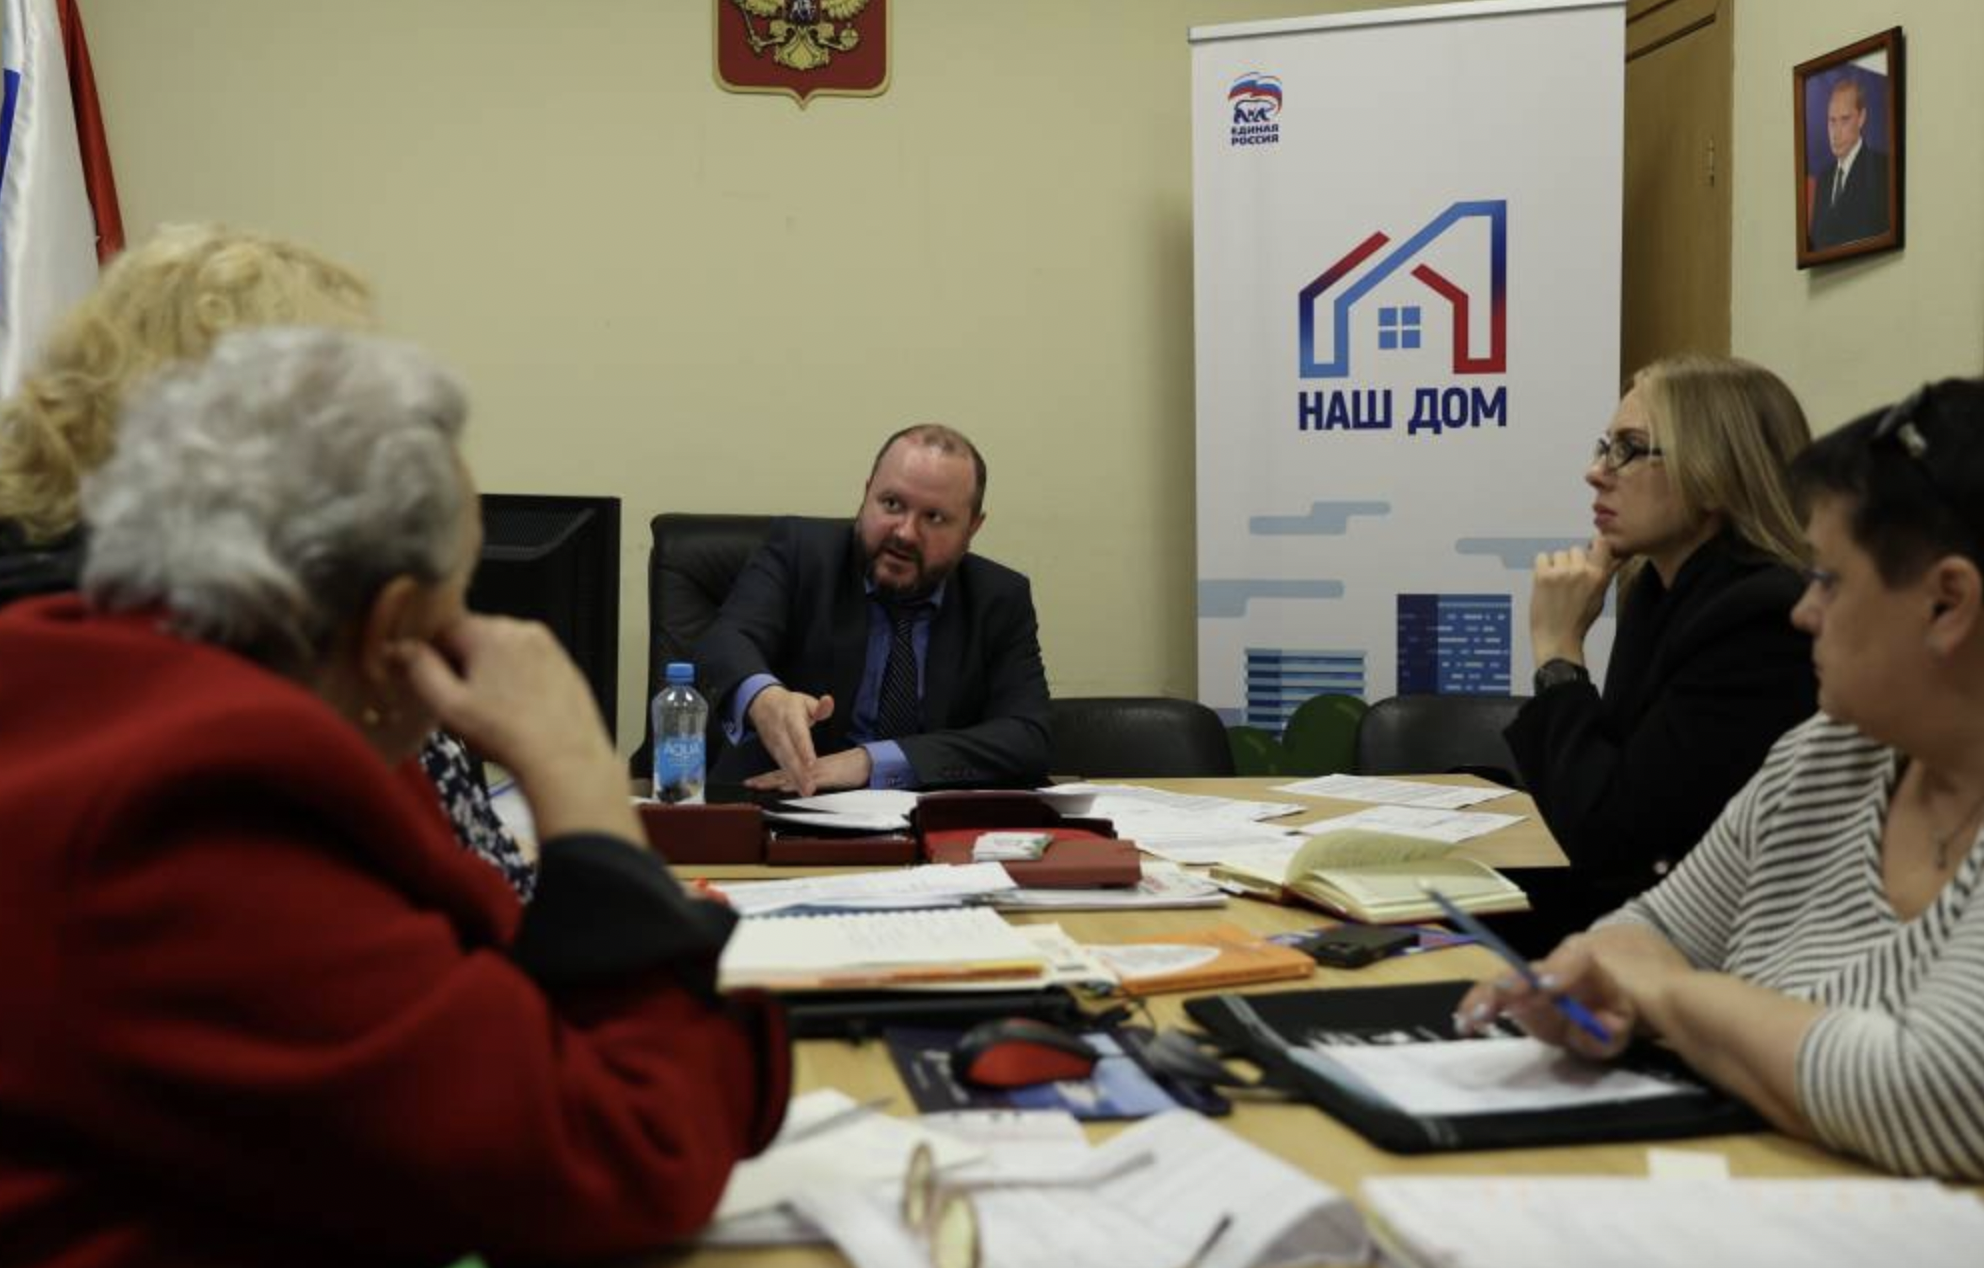 В приёмных проекта Единой России Наш дом помогают решать коммунальные проблемы петербуржцев